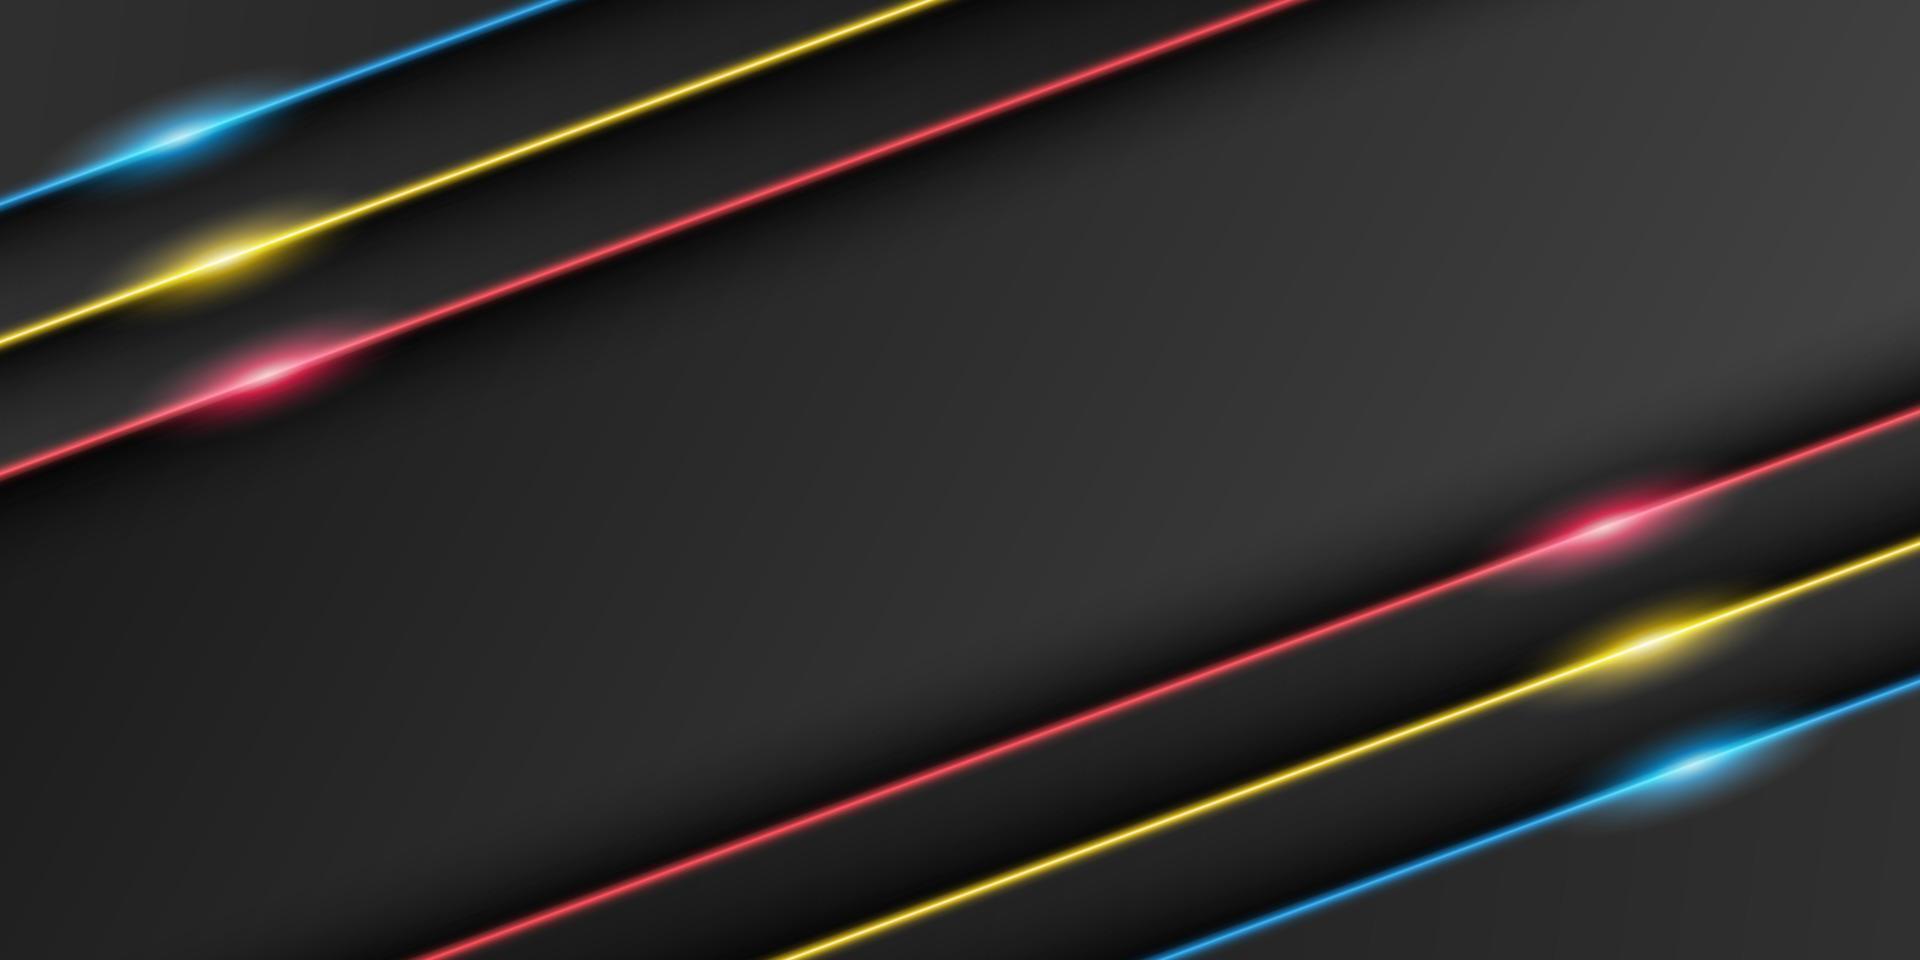 sfondo cornice nera metallizzata astratta, strato di sovrapposizione triangolare con linea di luce rossa, gialla, blu, forma diagonale, design minimale scuro con spazio di copia, illustrazione vettoriale